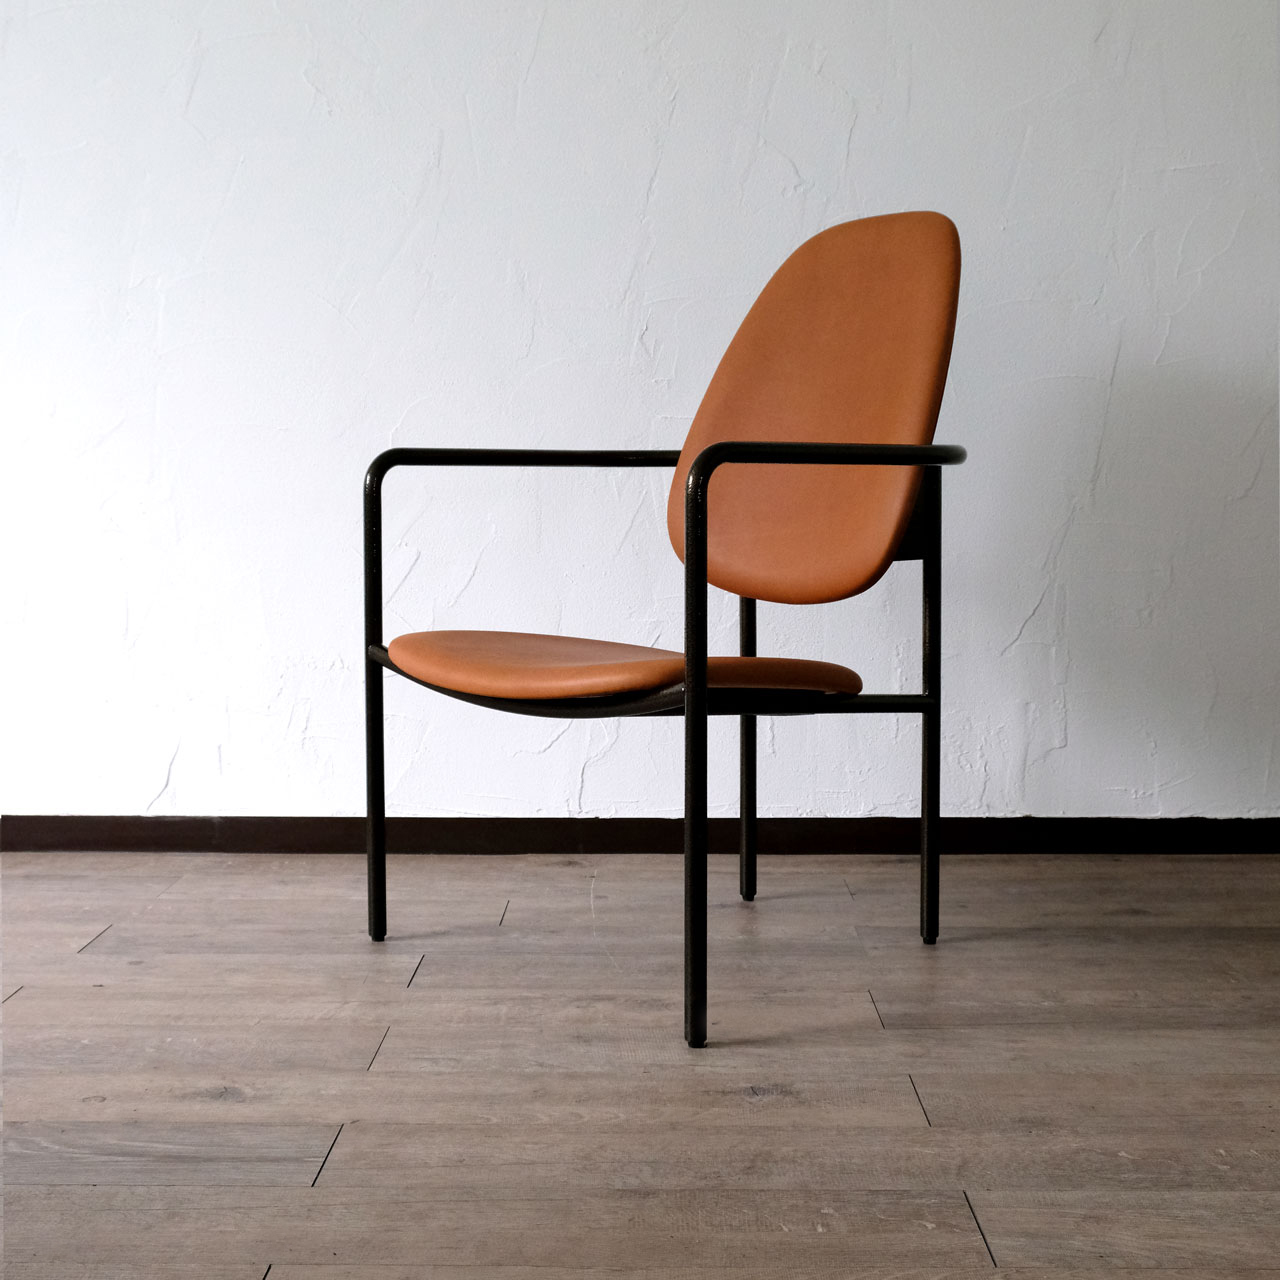 ラウンジチェア Lounge chair｜埼玉県吉川市の町工場 有限会社山口製作所 オリジナル家具デザイン製品